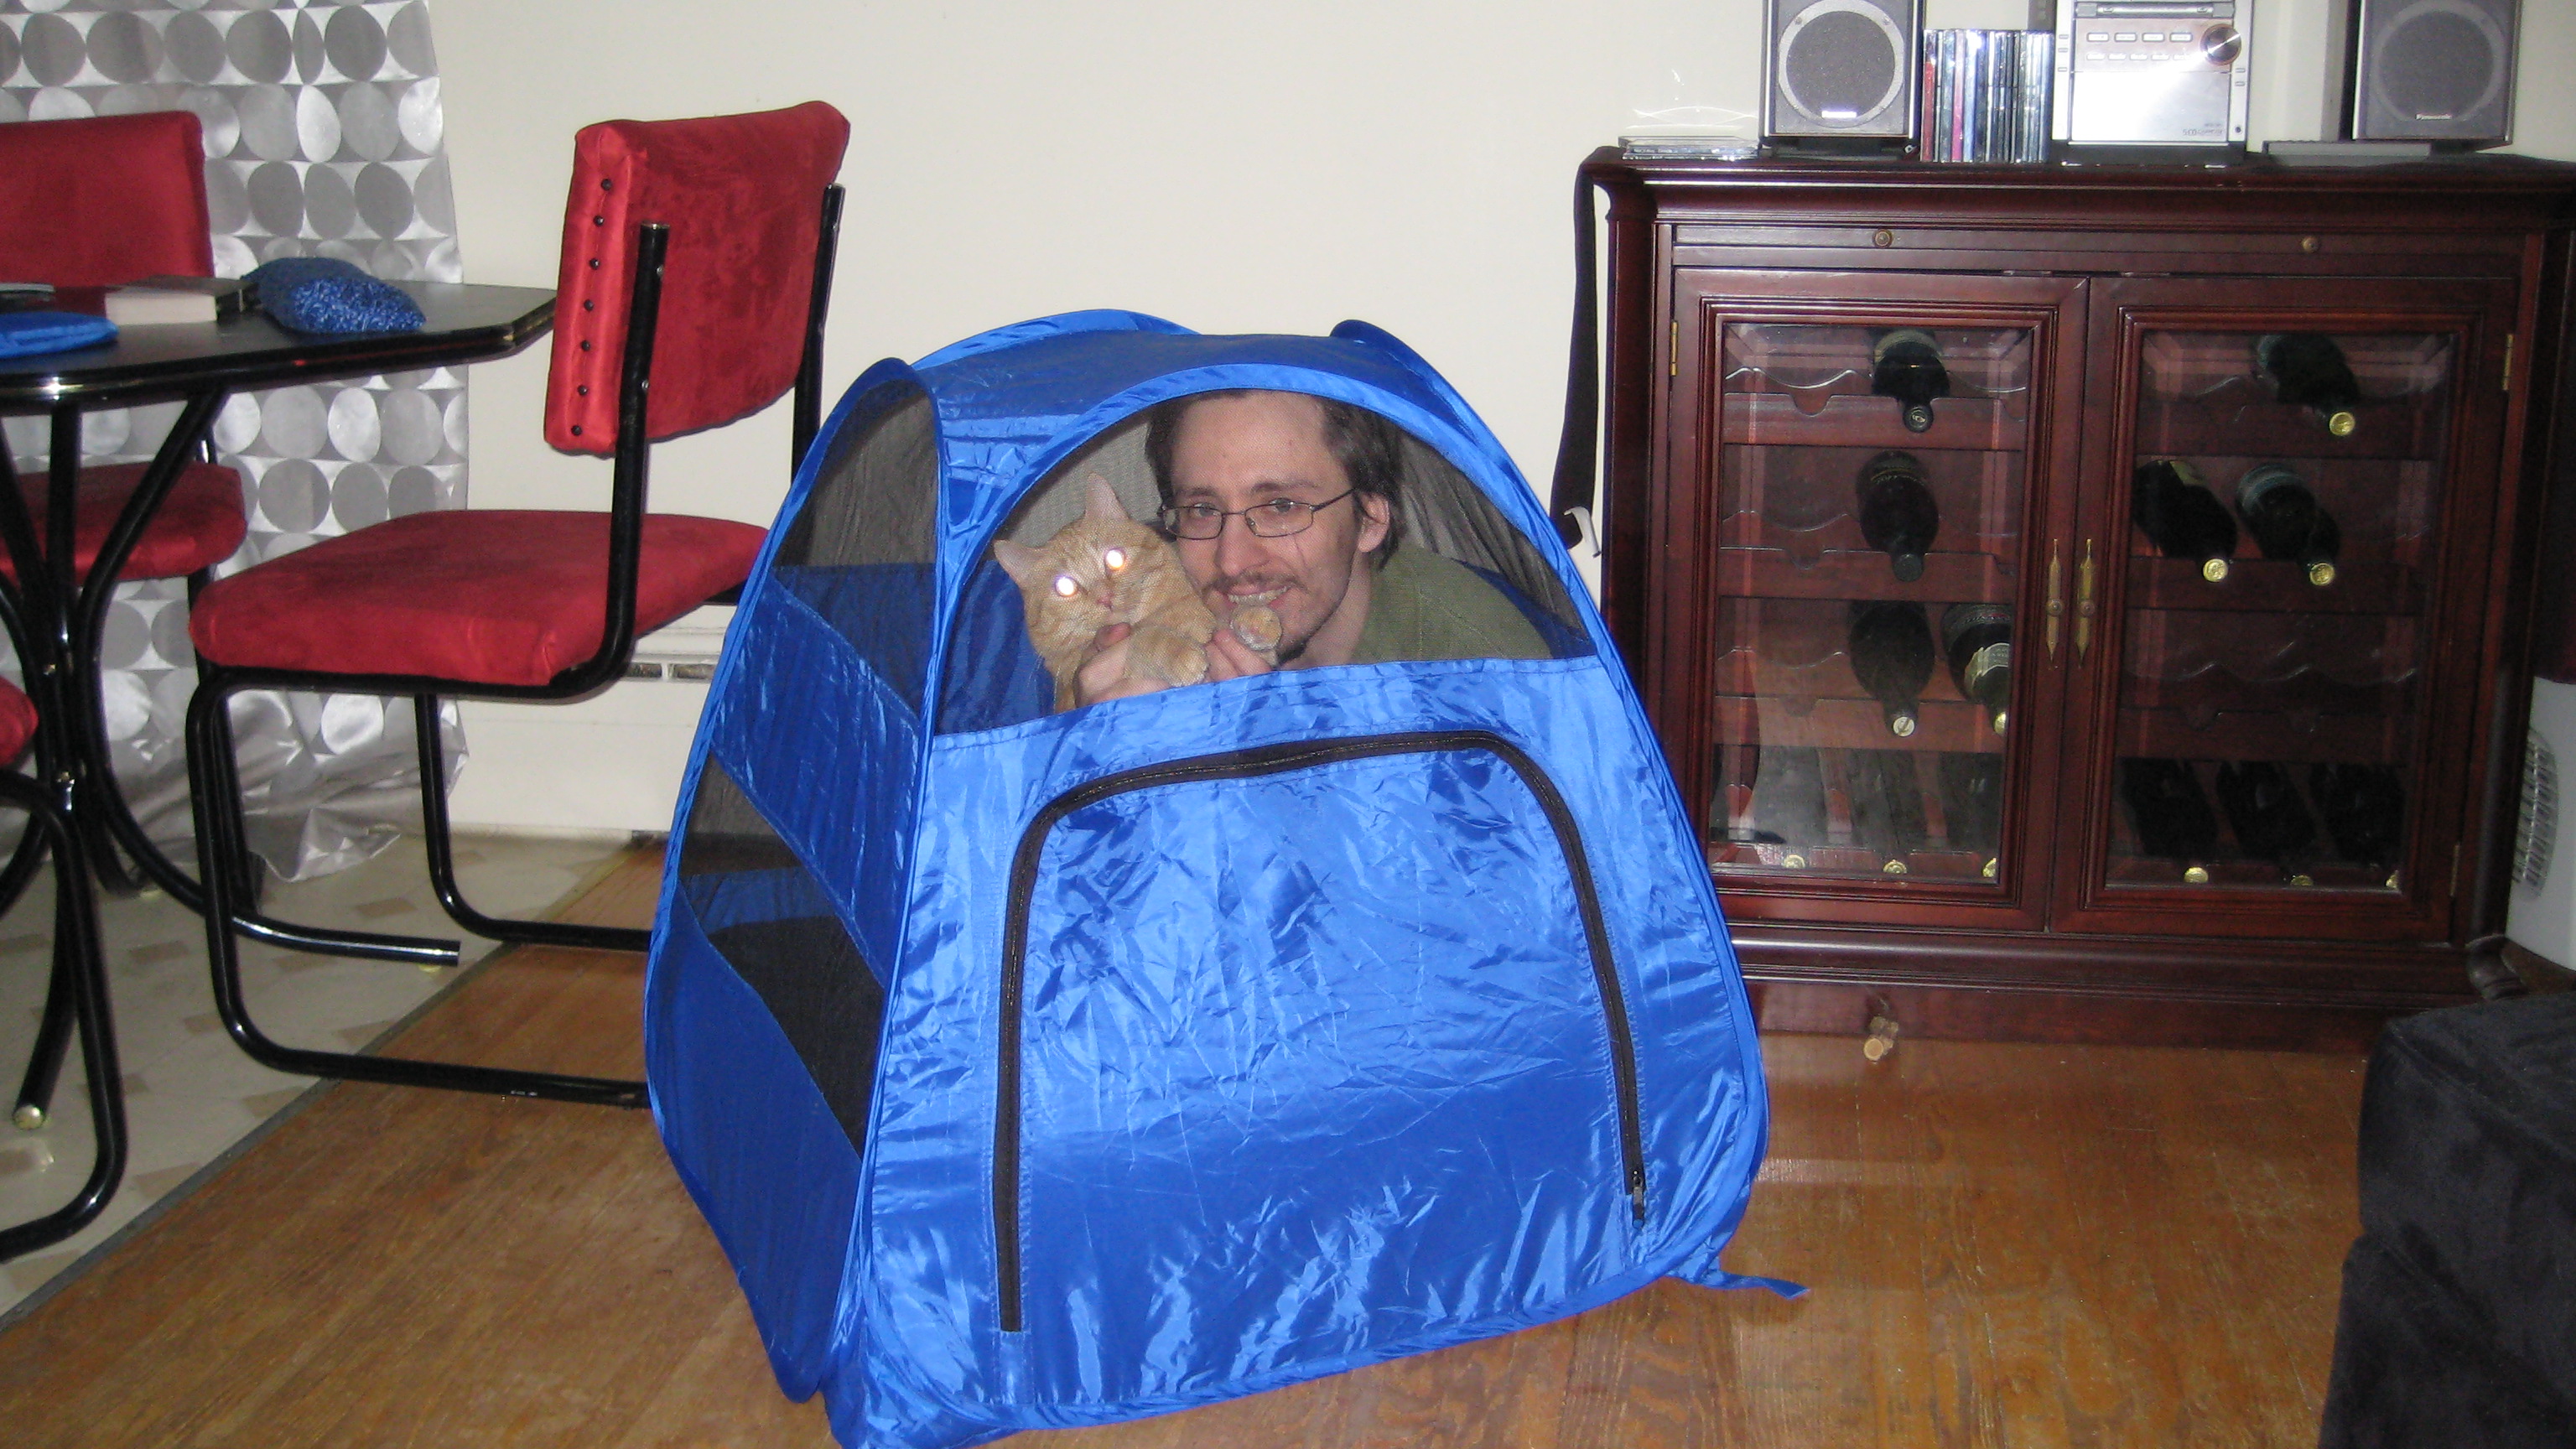 Kabutroid and Jack huddled up inside of a little mini blue cat tent, set up in a hardwood livingroom.